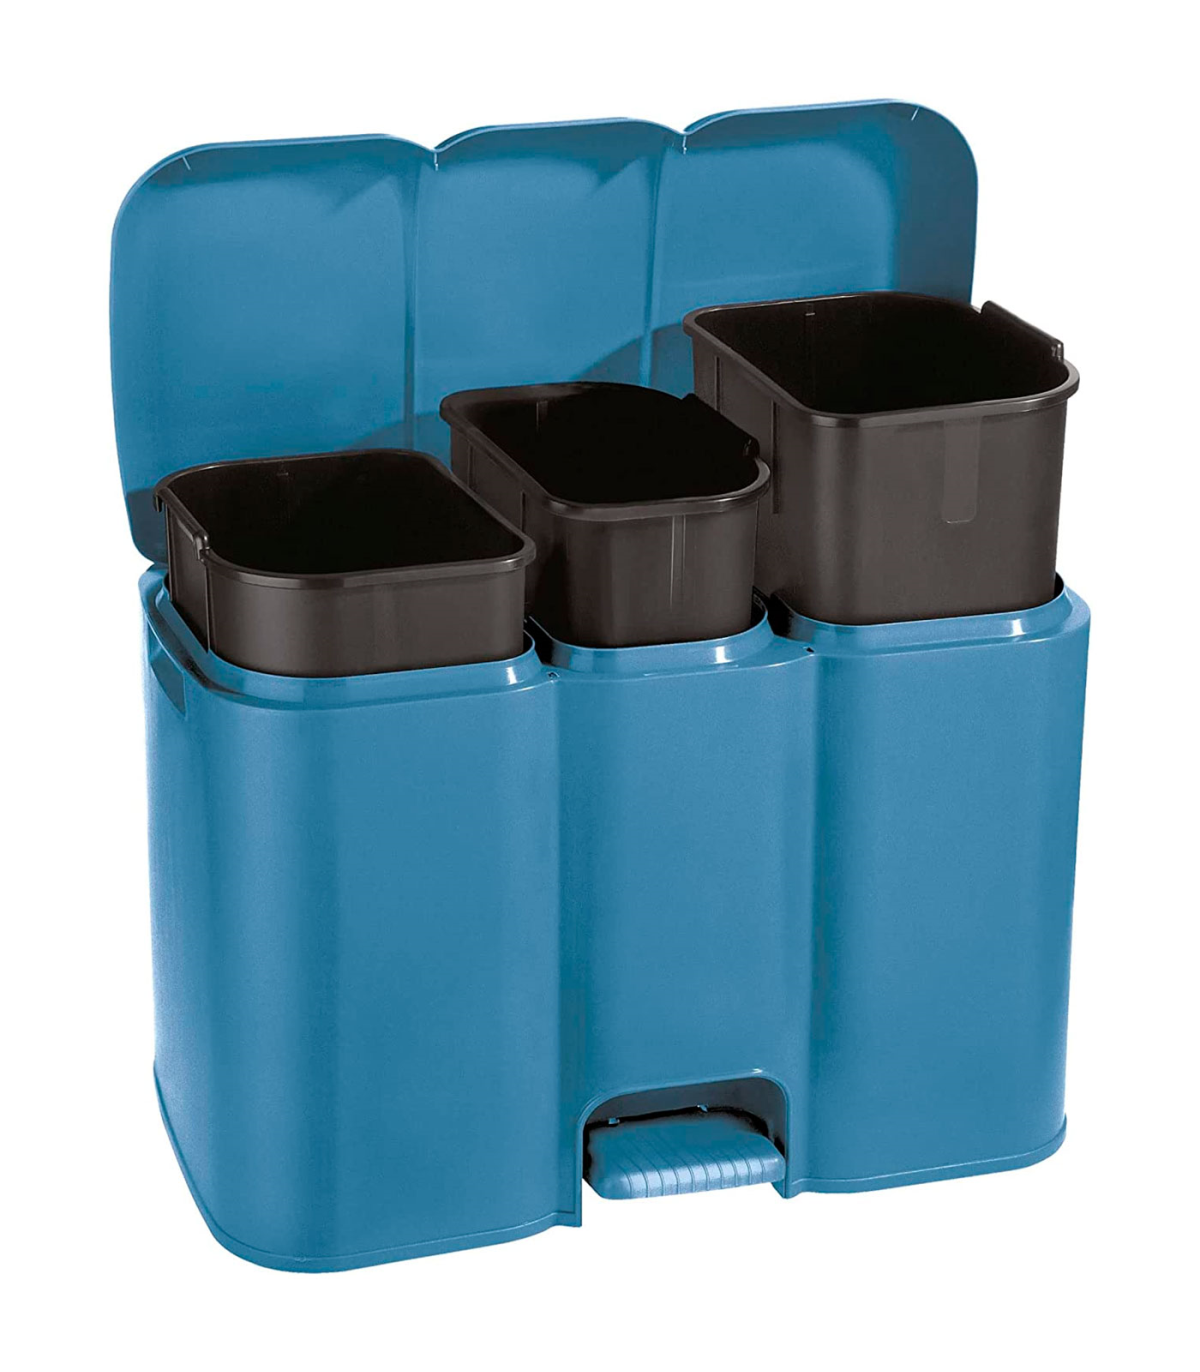 Tradineur - Cubo de basura de plástico con pedal y recipiente